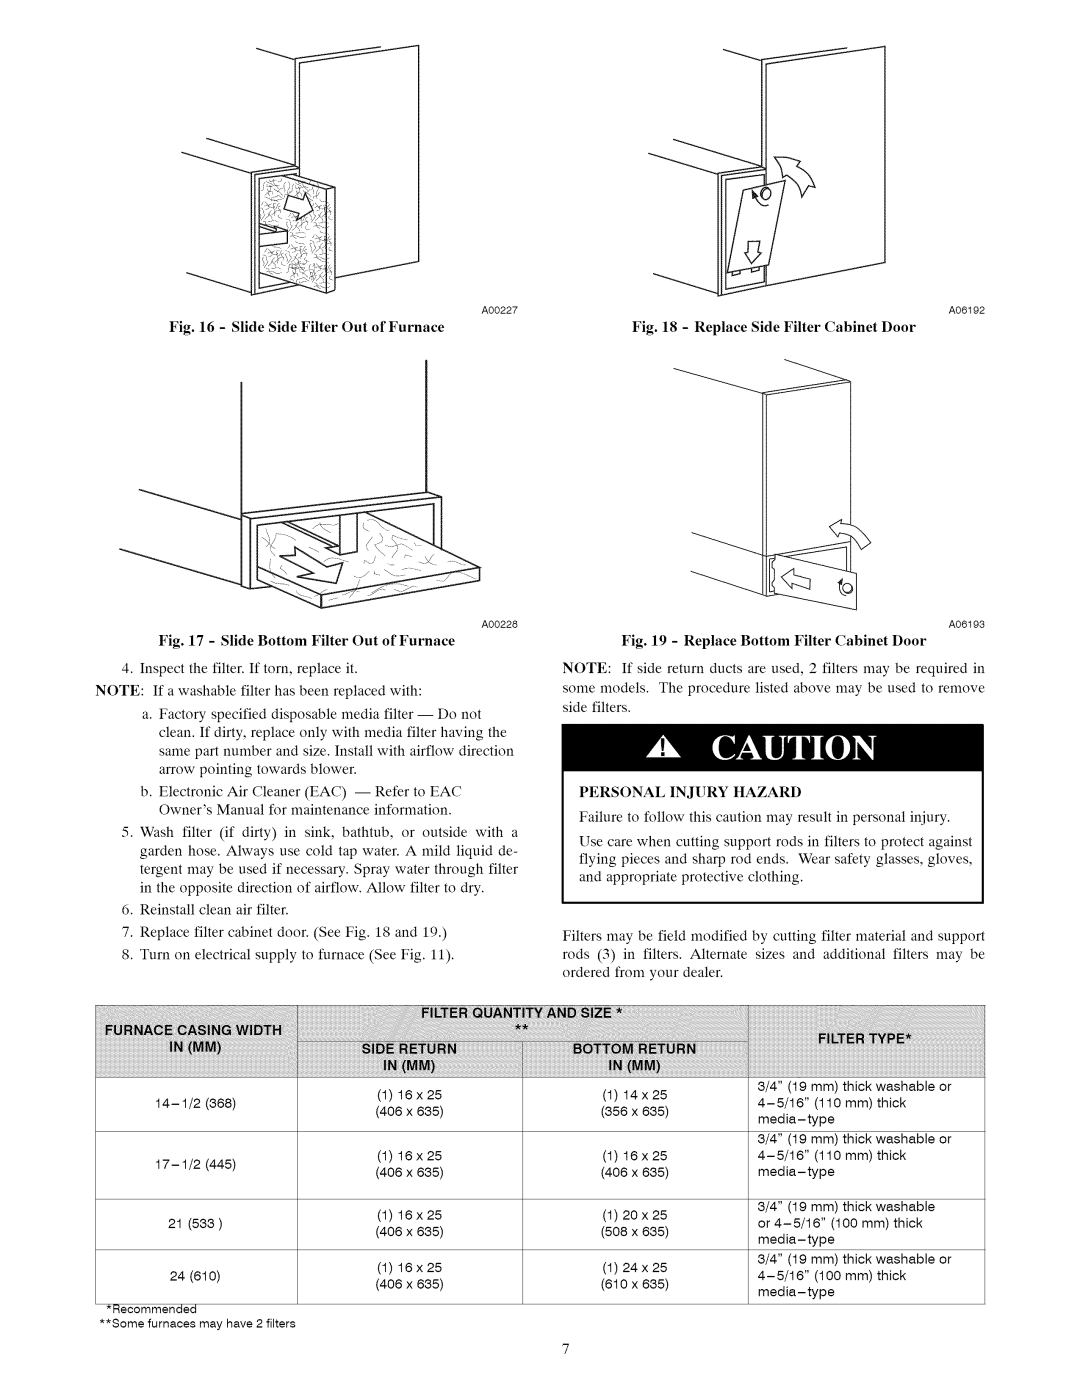 Carrier A10247 owner manual Slide Side Filter Out of Furnace 